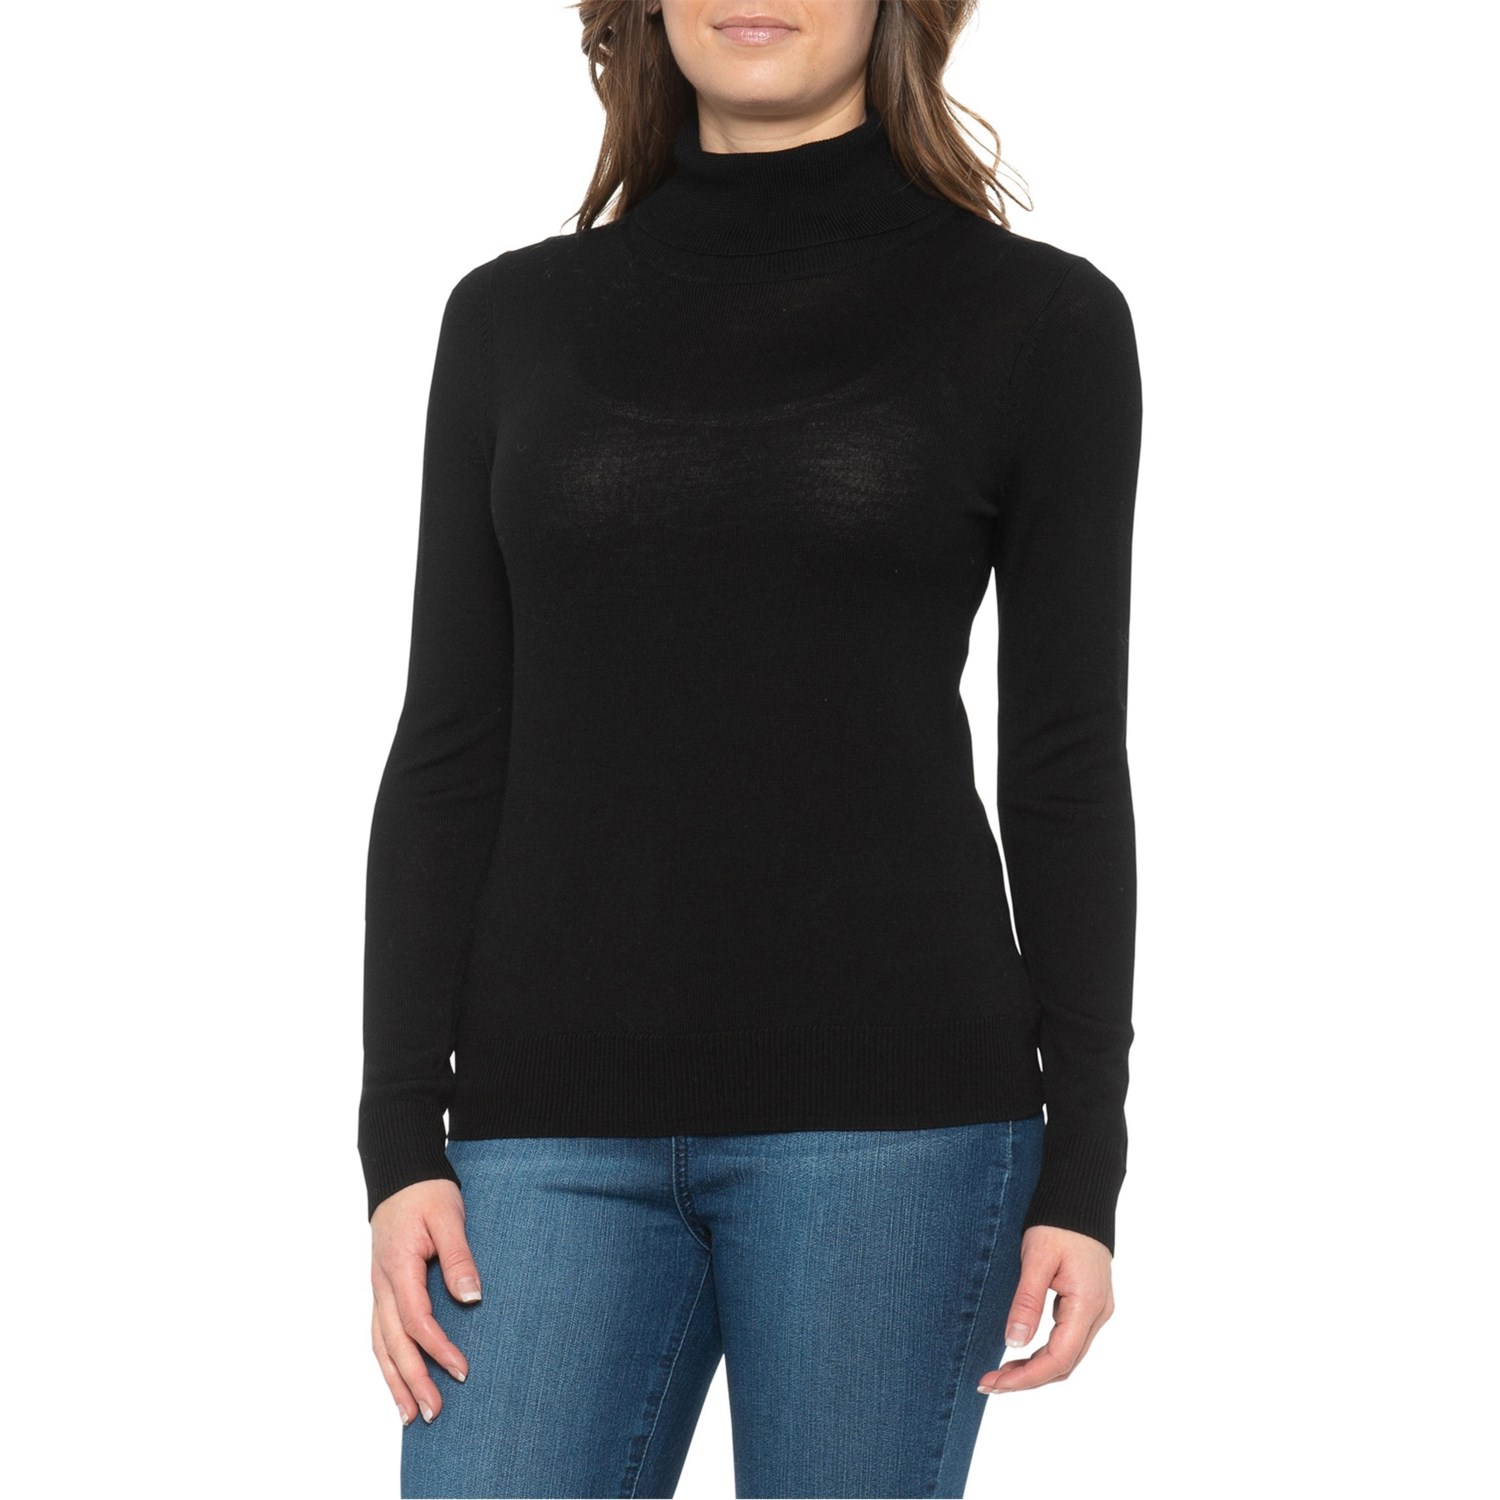 black merino wool sweater womens